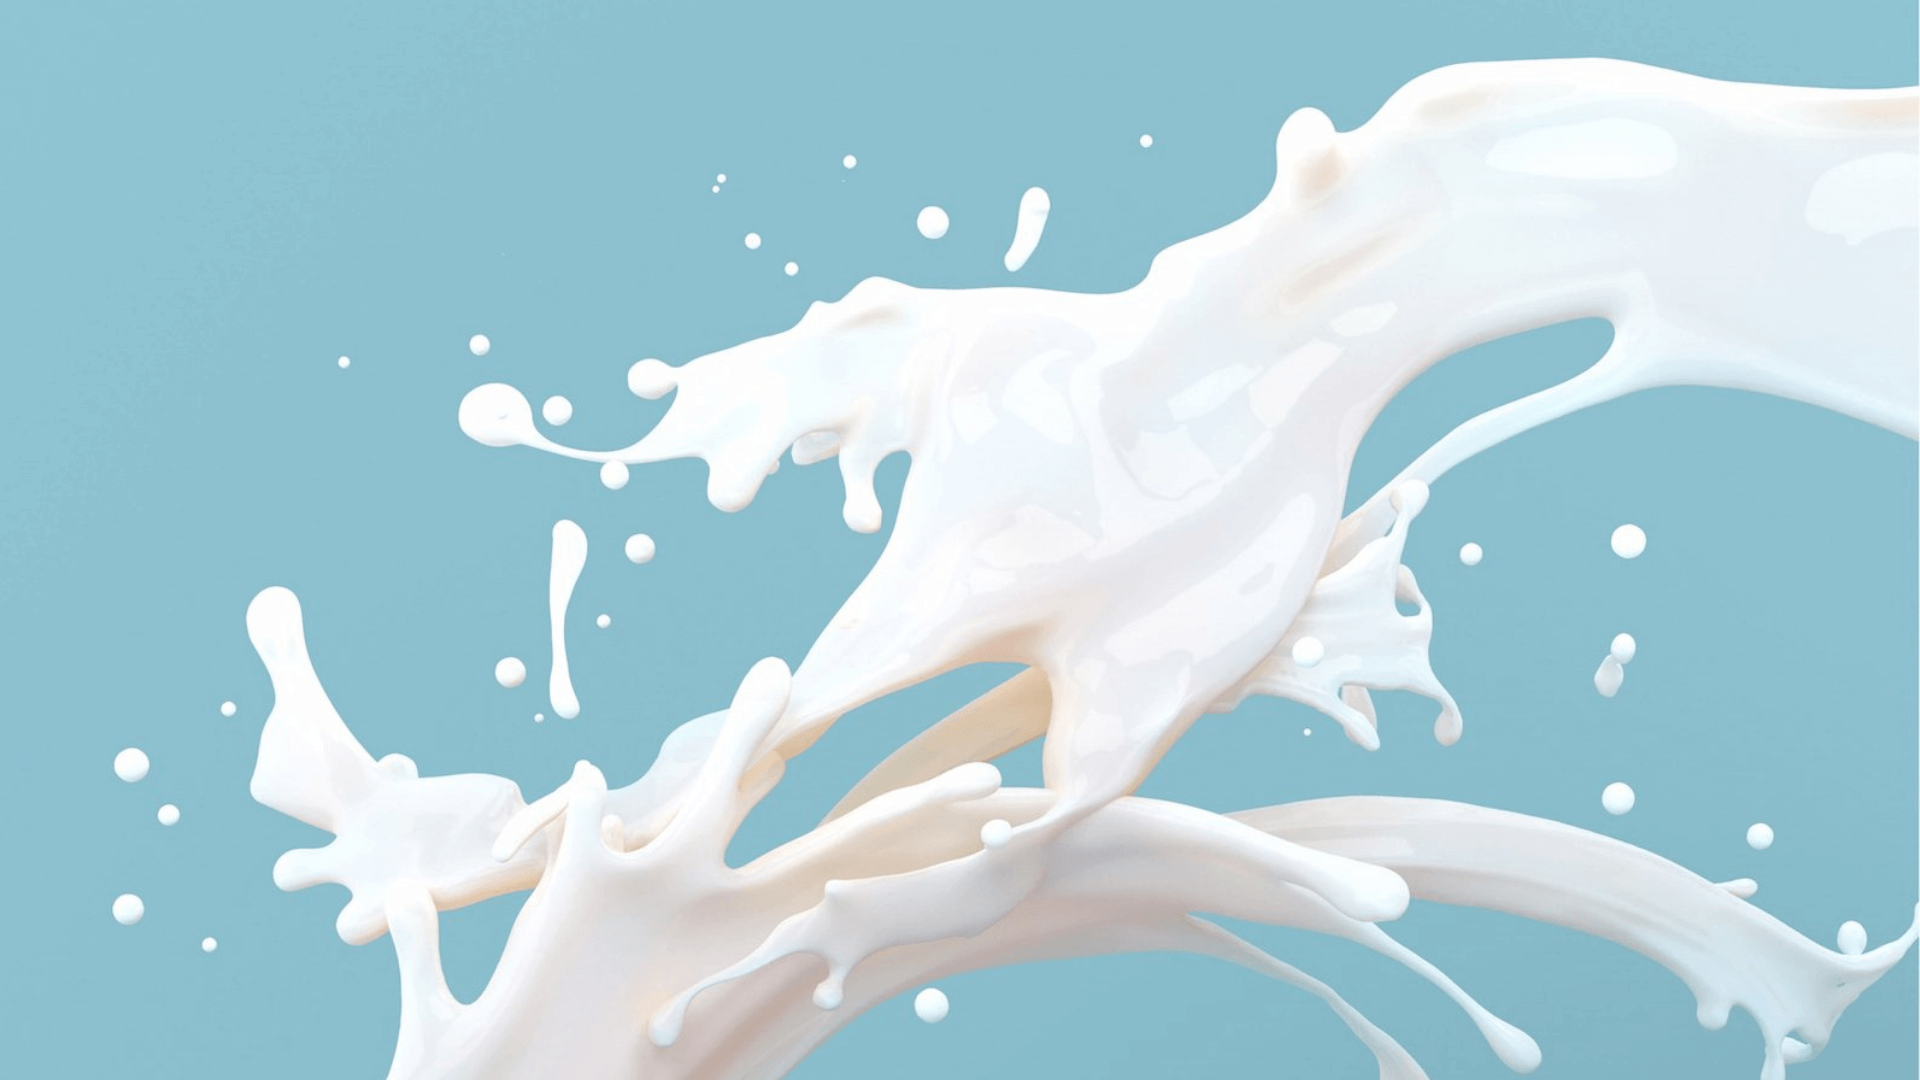 Молоко для исчезновения вода для суперсилы